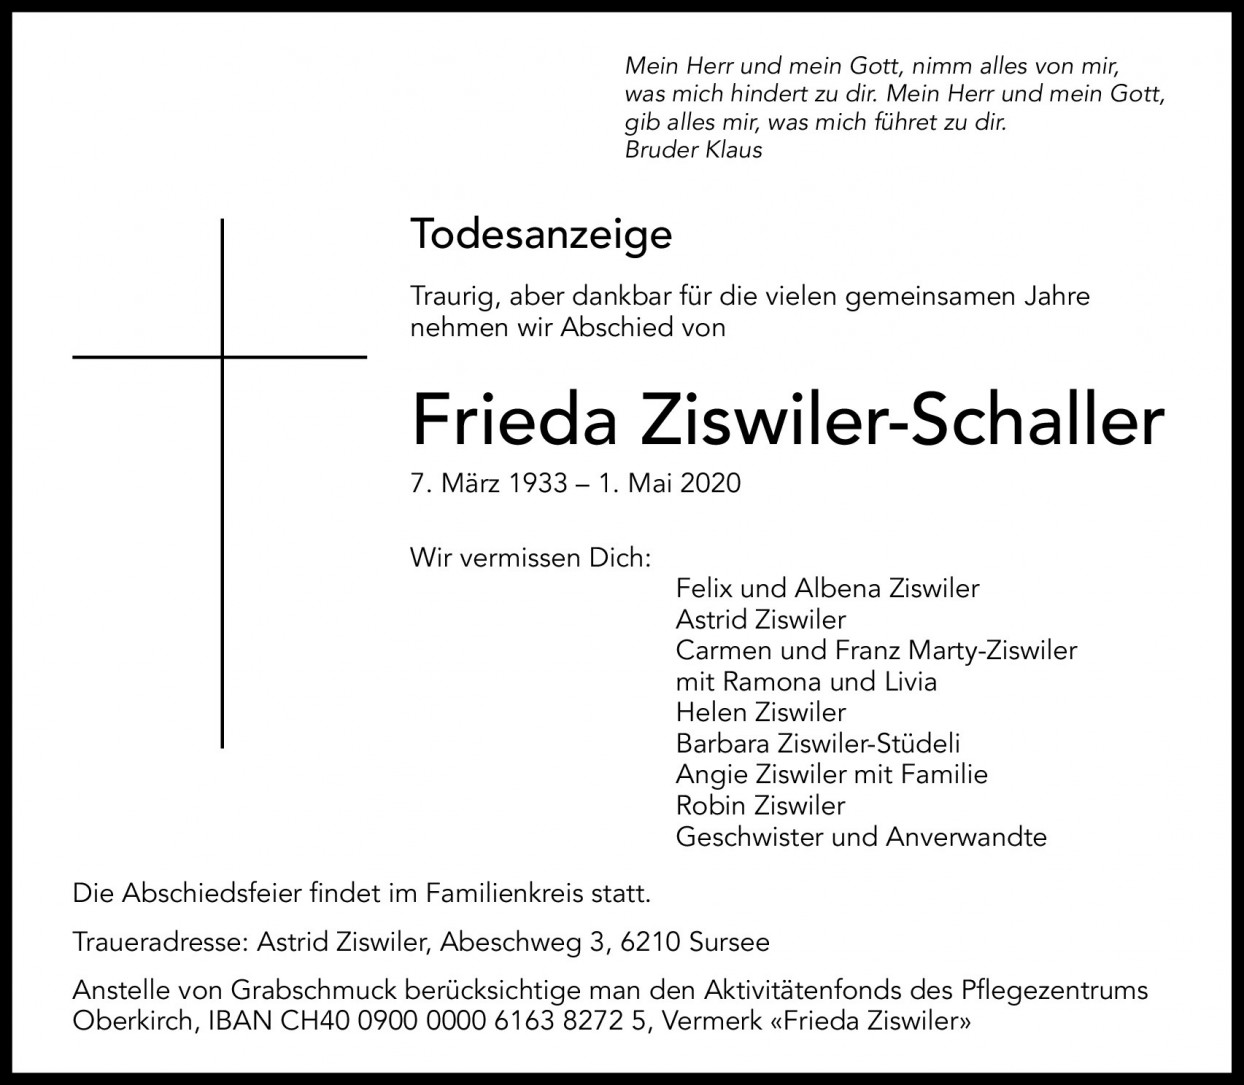 Frieda Ziswiler-Schaller